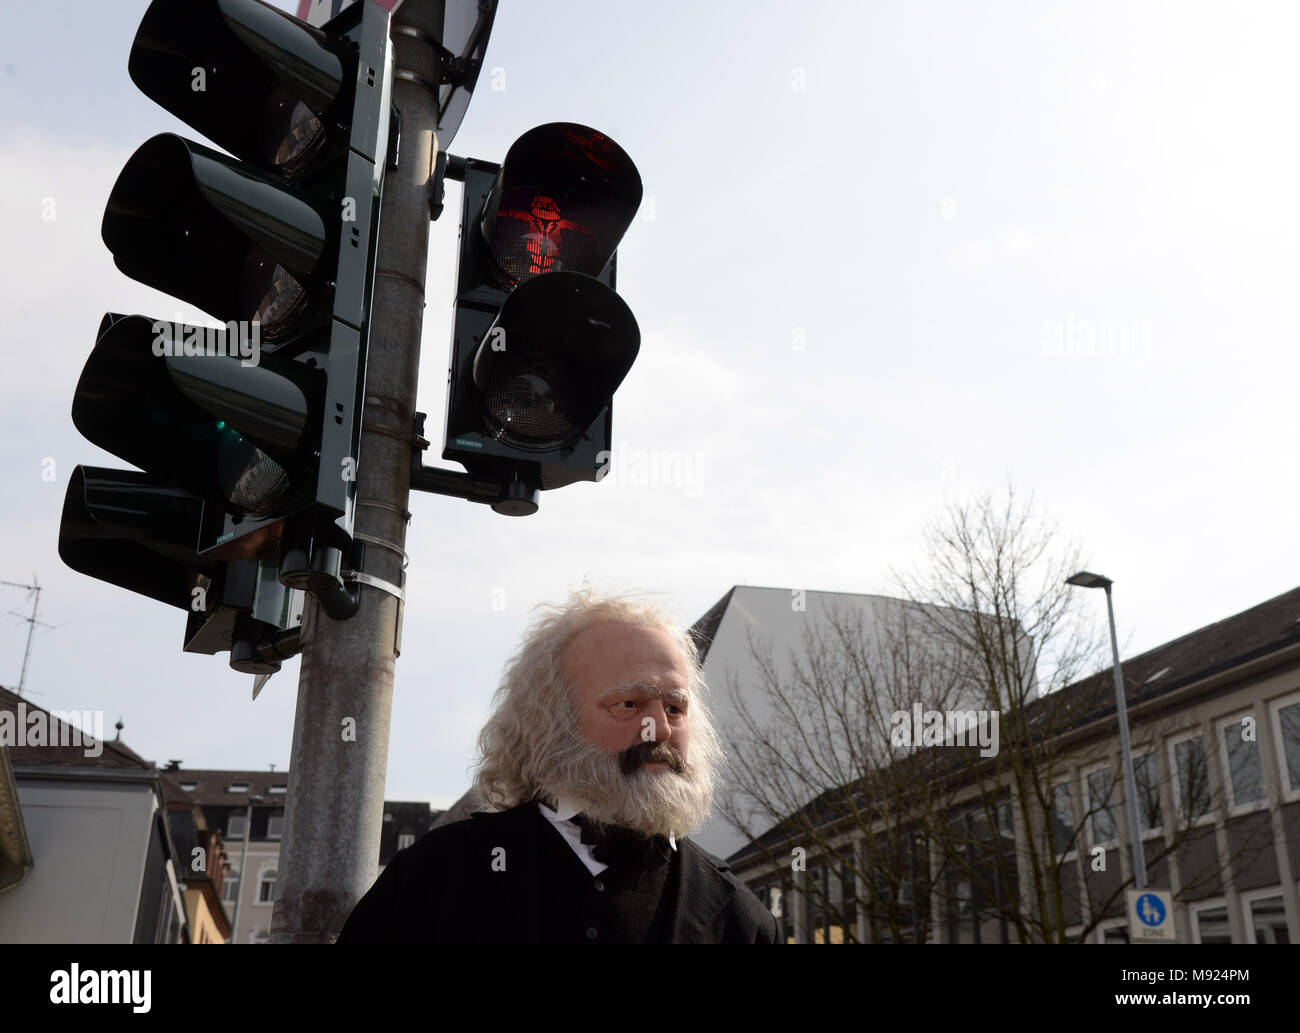 19 mars 2018, l'Allemagne, Trèves : une figure de Karl Marx se tient sous un feu rouge avec un symbole de Karl Marx. La technologie LED et des pochoirs ont été installés pour le feu de circulation à proximité du point d'être érigée la statue de Karl Marx. Photo : Harald Tittel/dpa Banque D'Images